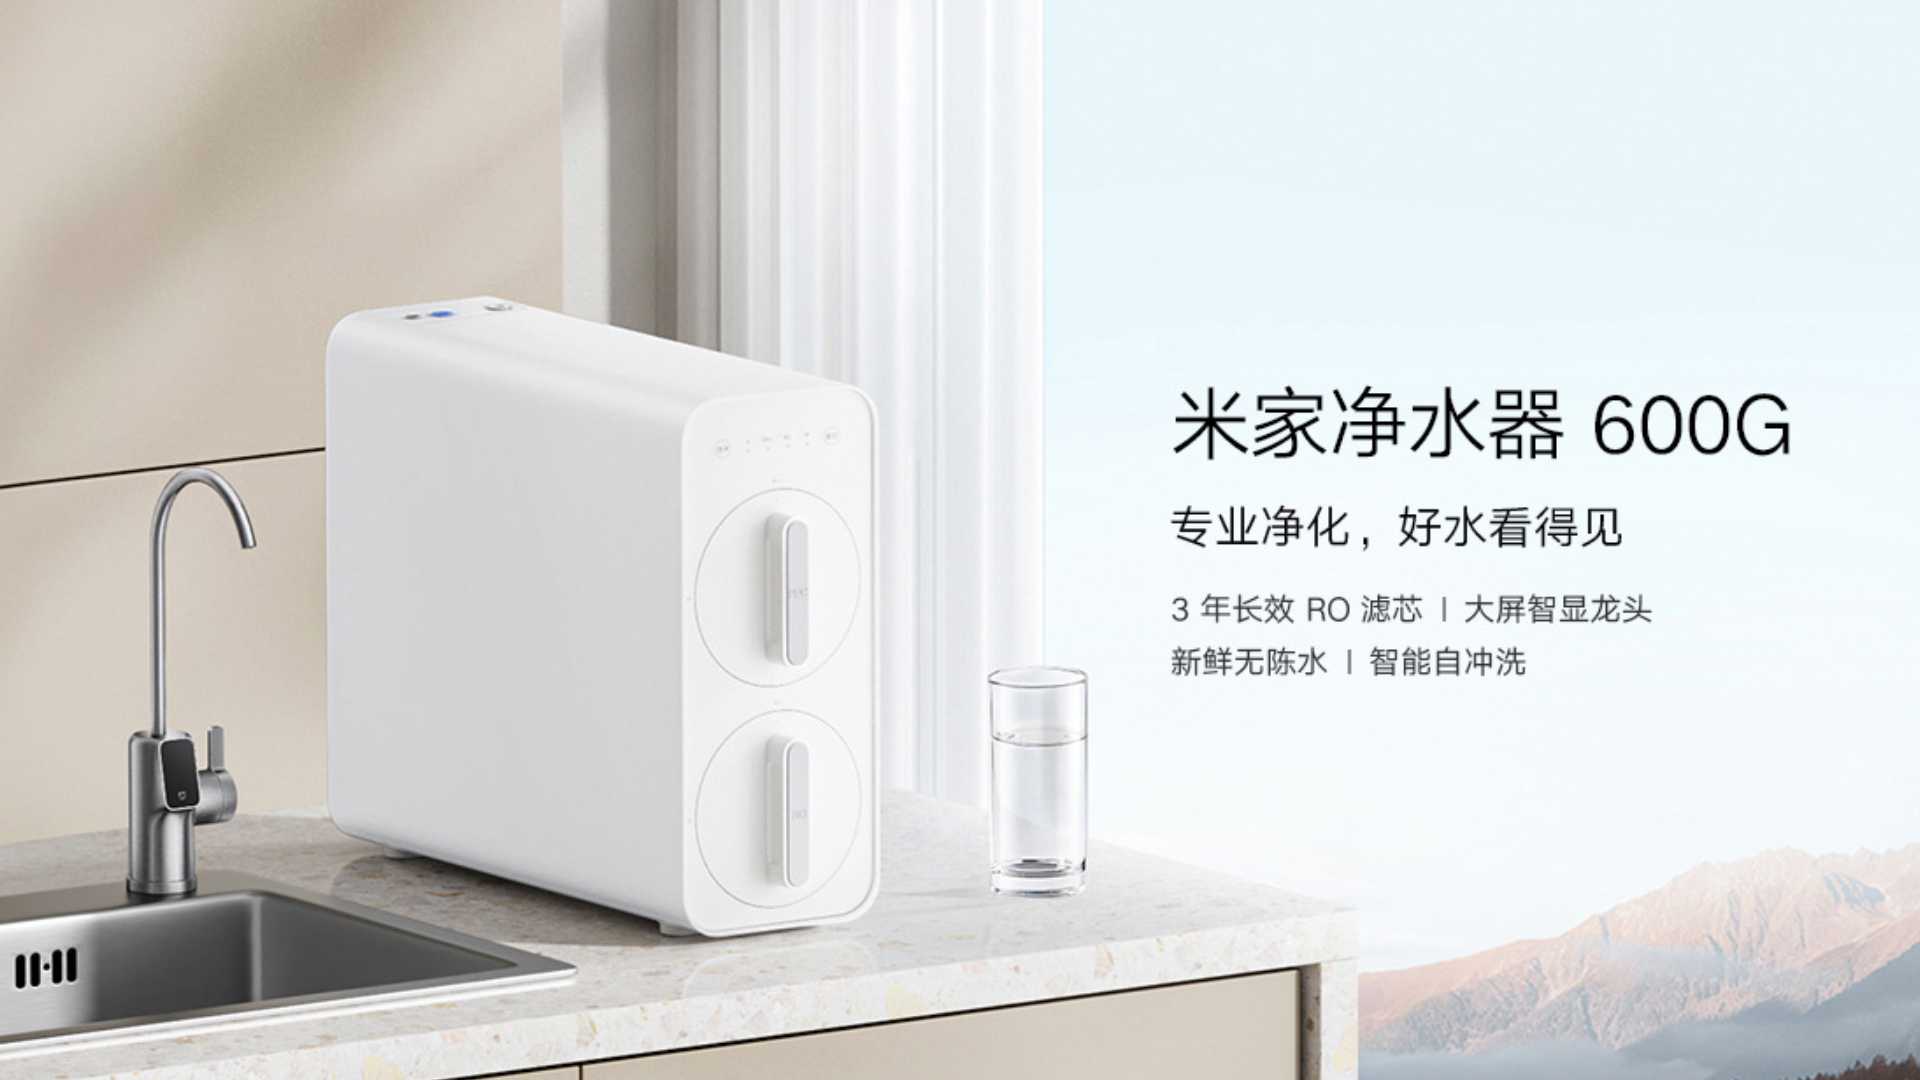 Acqua purificata direttamente dal rubinetto grazie al nuovo Xiaomi Mijia  Water Purifier 600G 